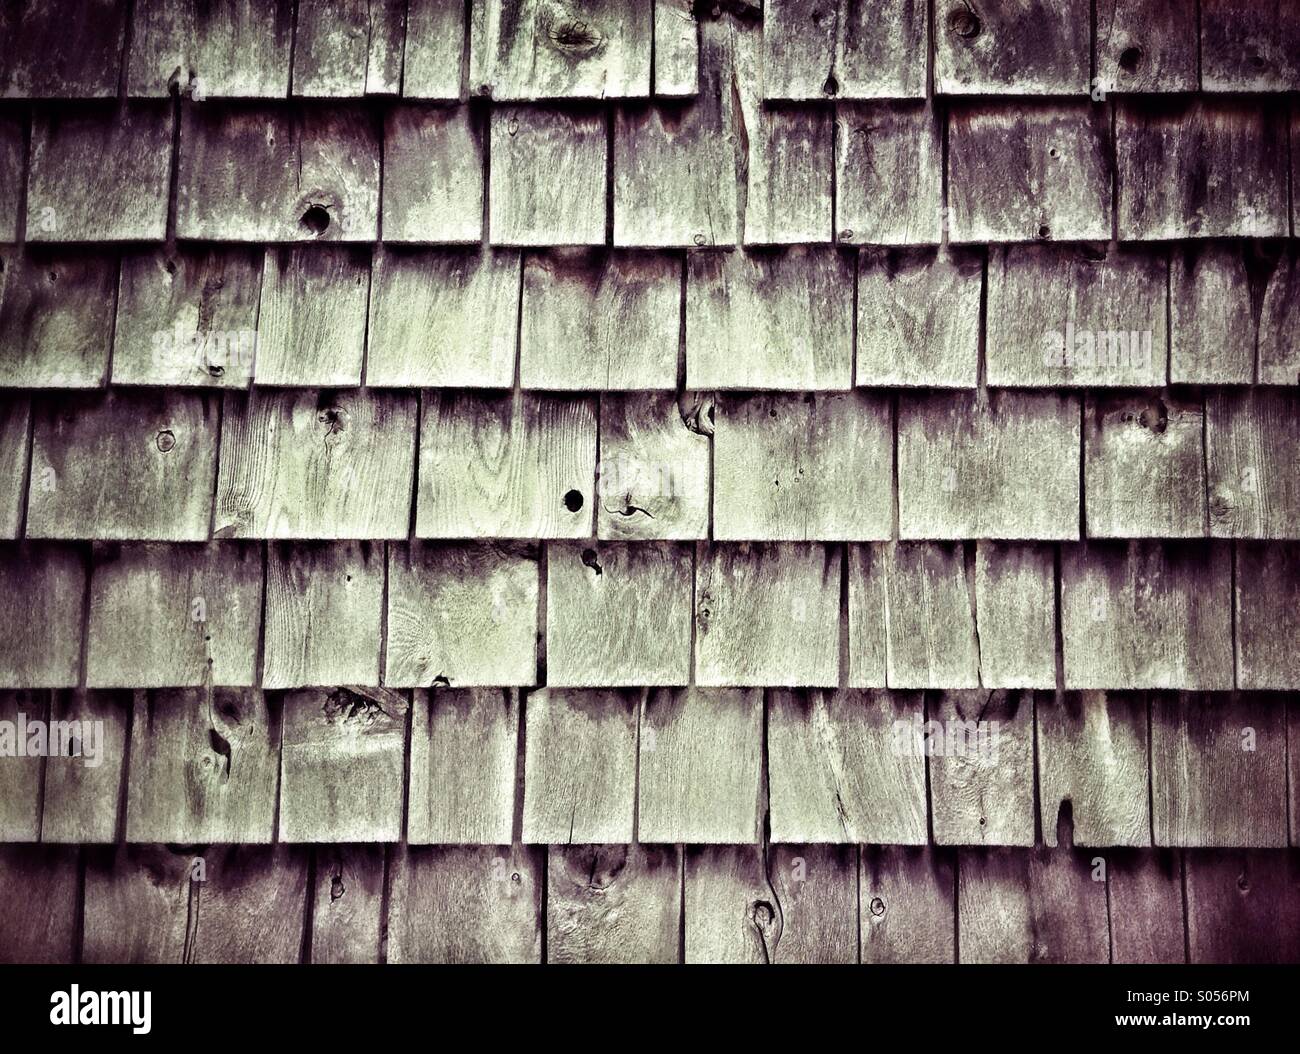 Weathered wood shingle siding Stock Photo